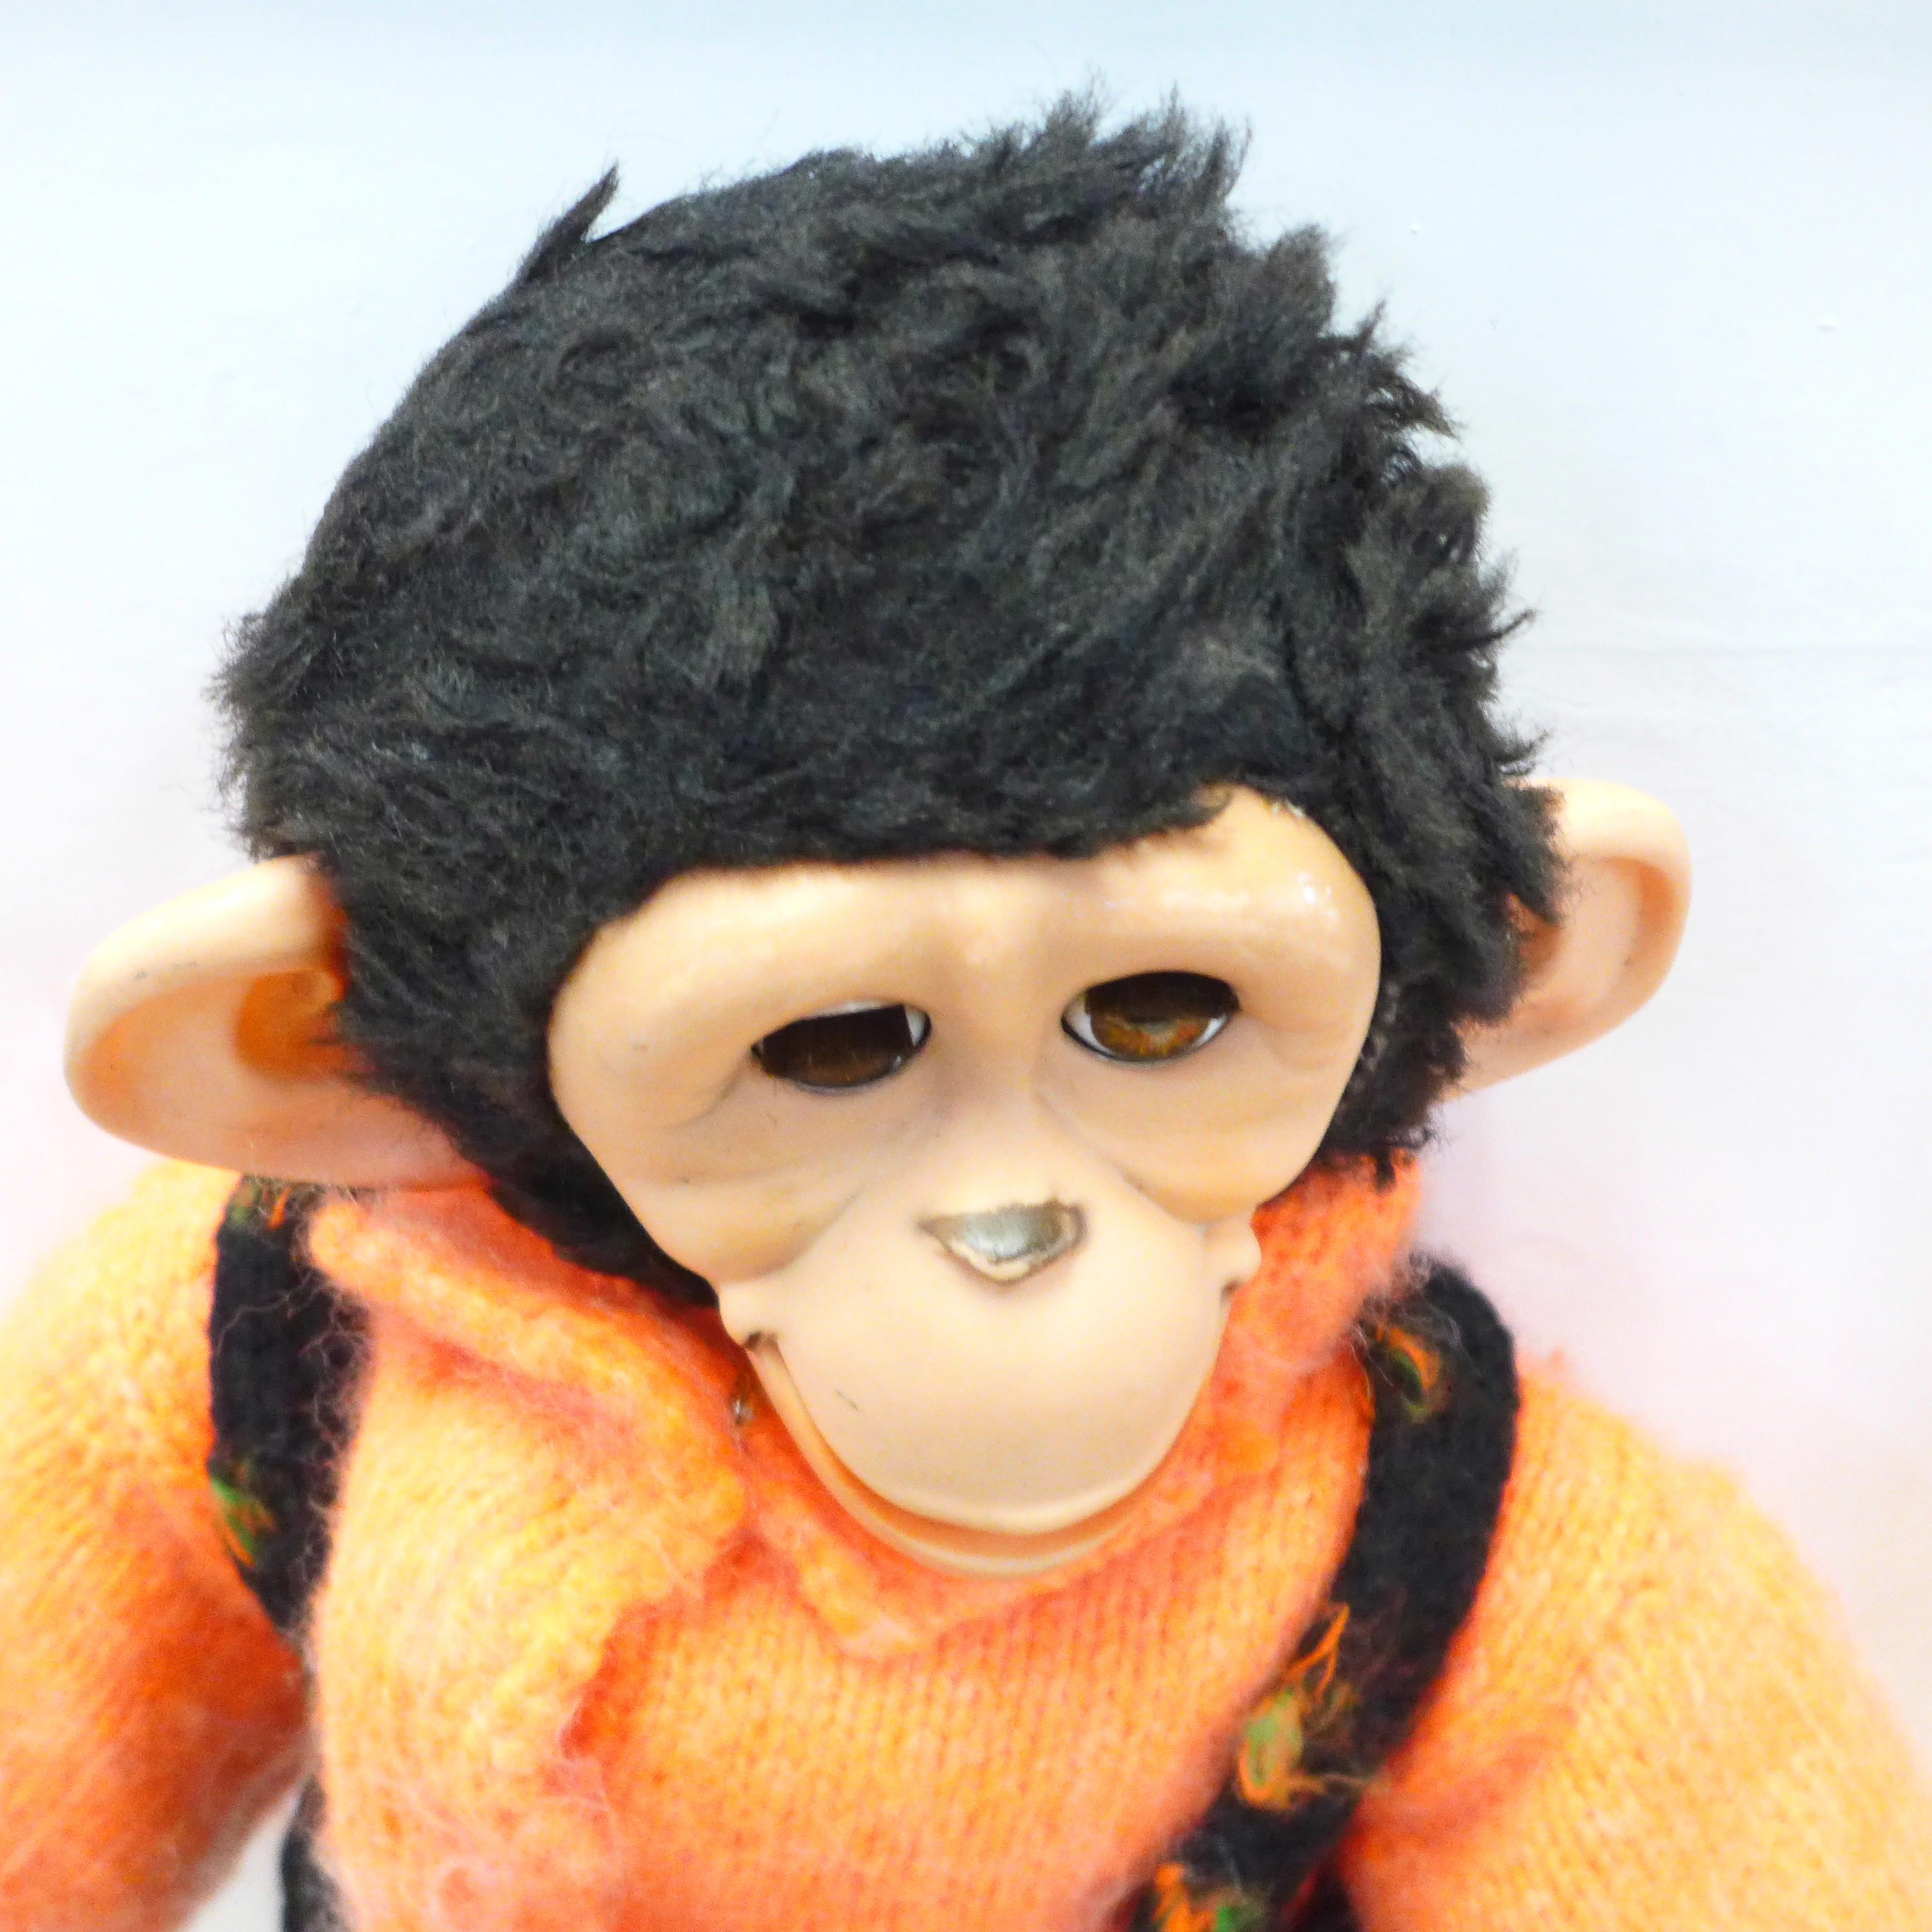 A Jacko monkey figure - Bild 2 aus 2